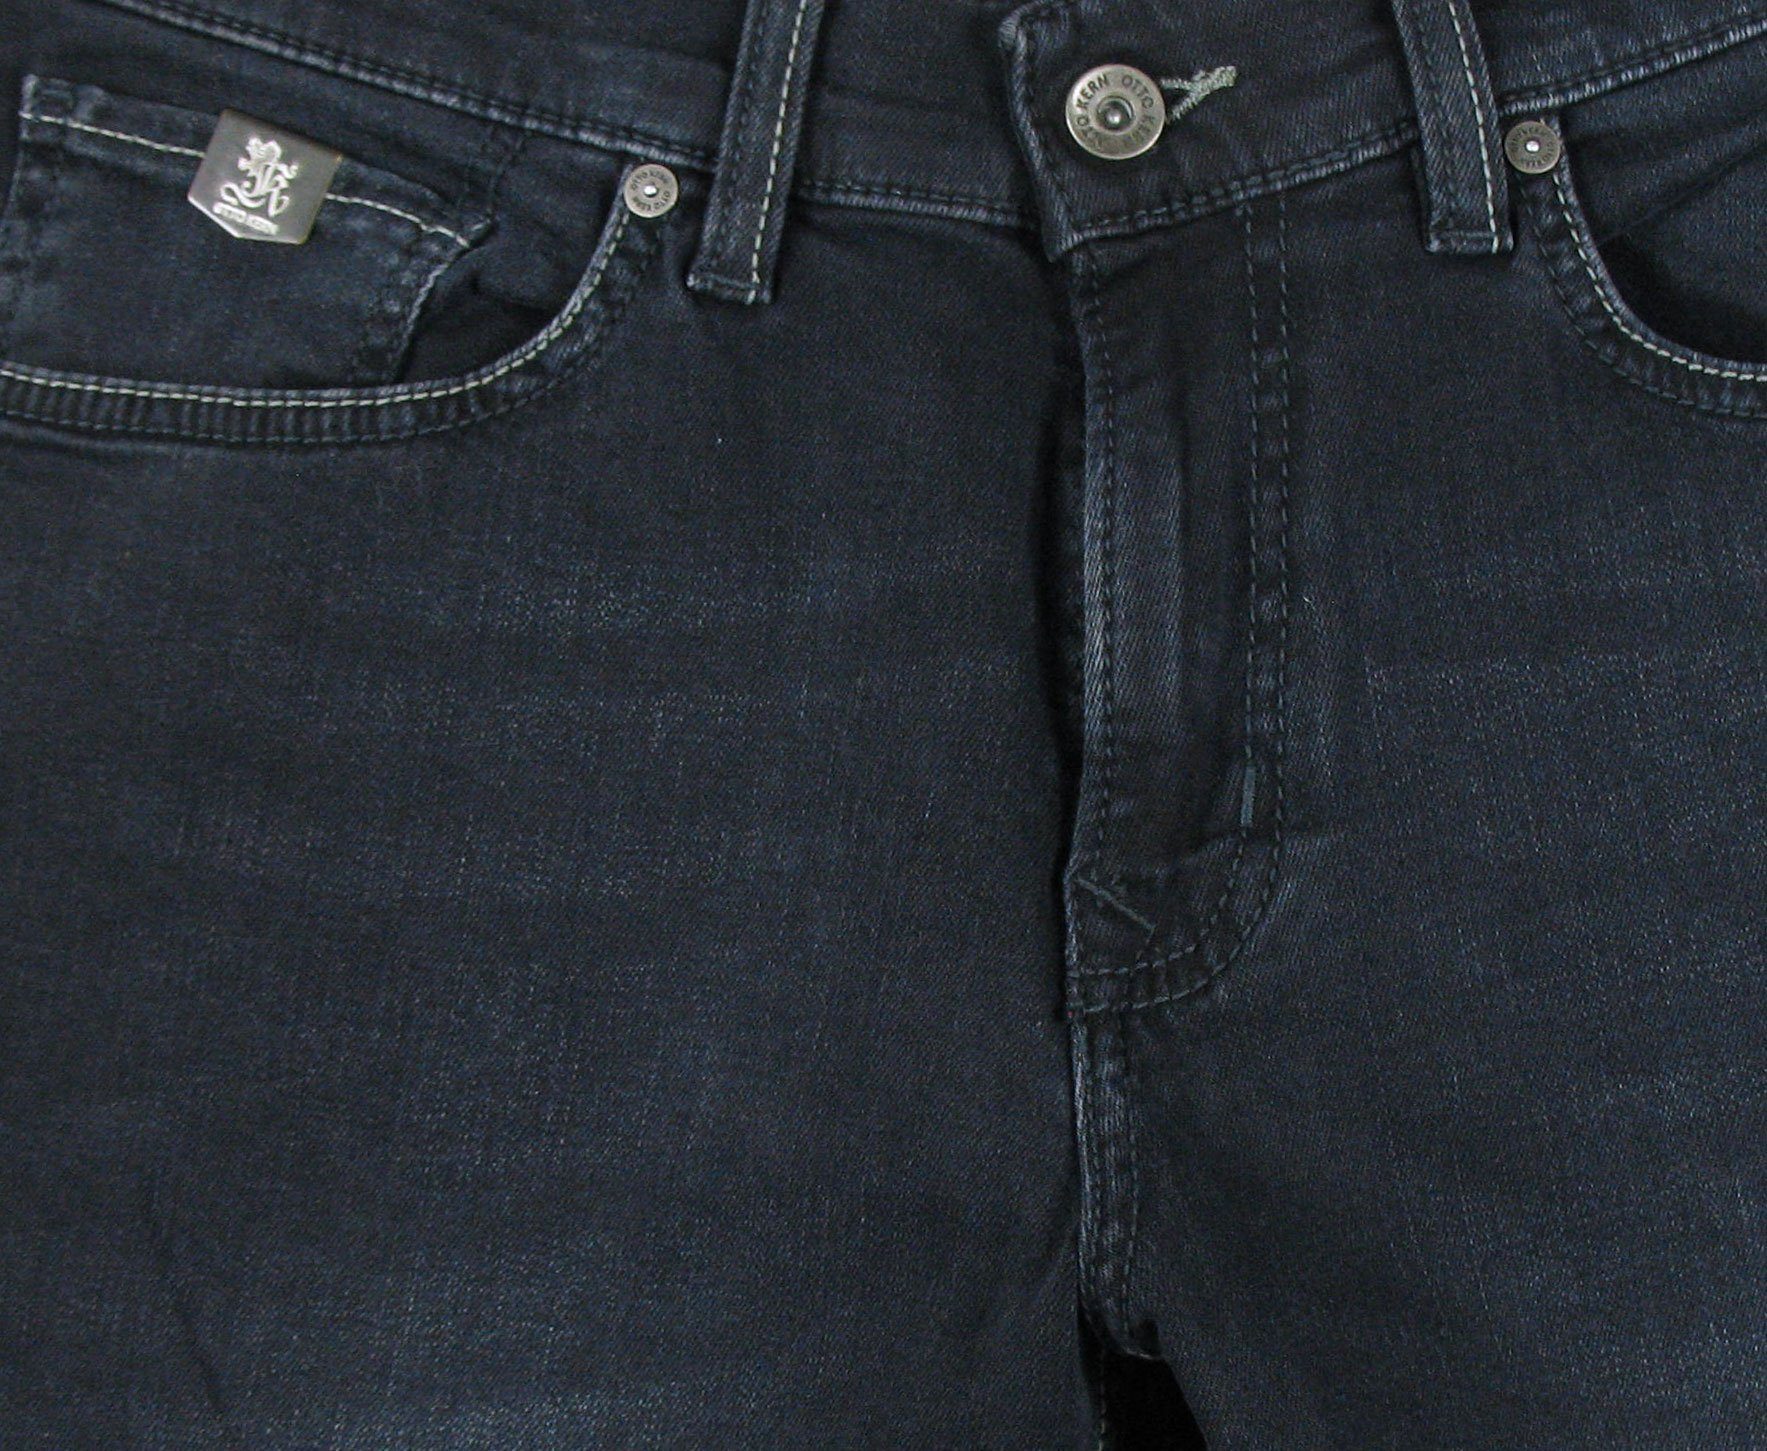 Otto Kern Kern 5-Pocket-Jeans John Night Denim Flex Blue Pure